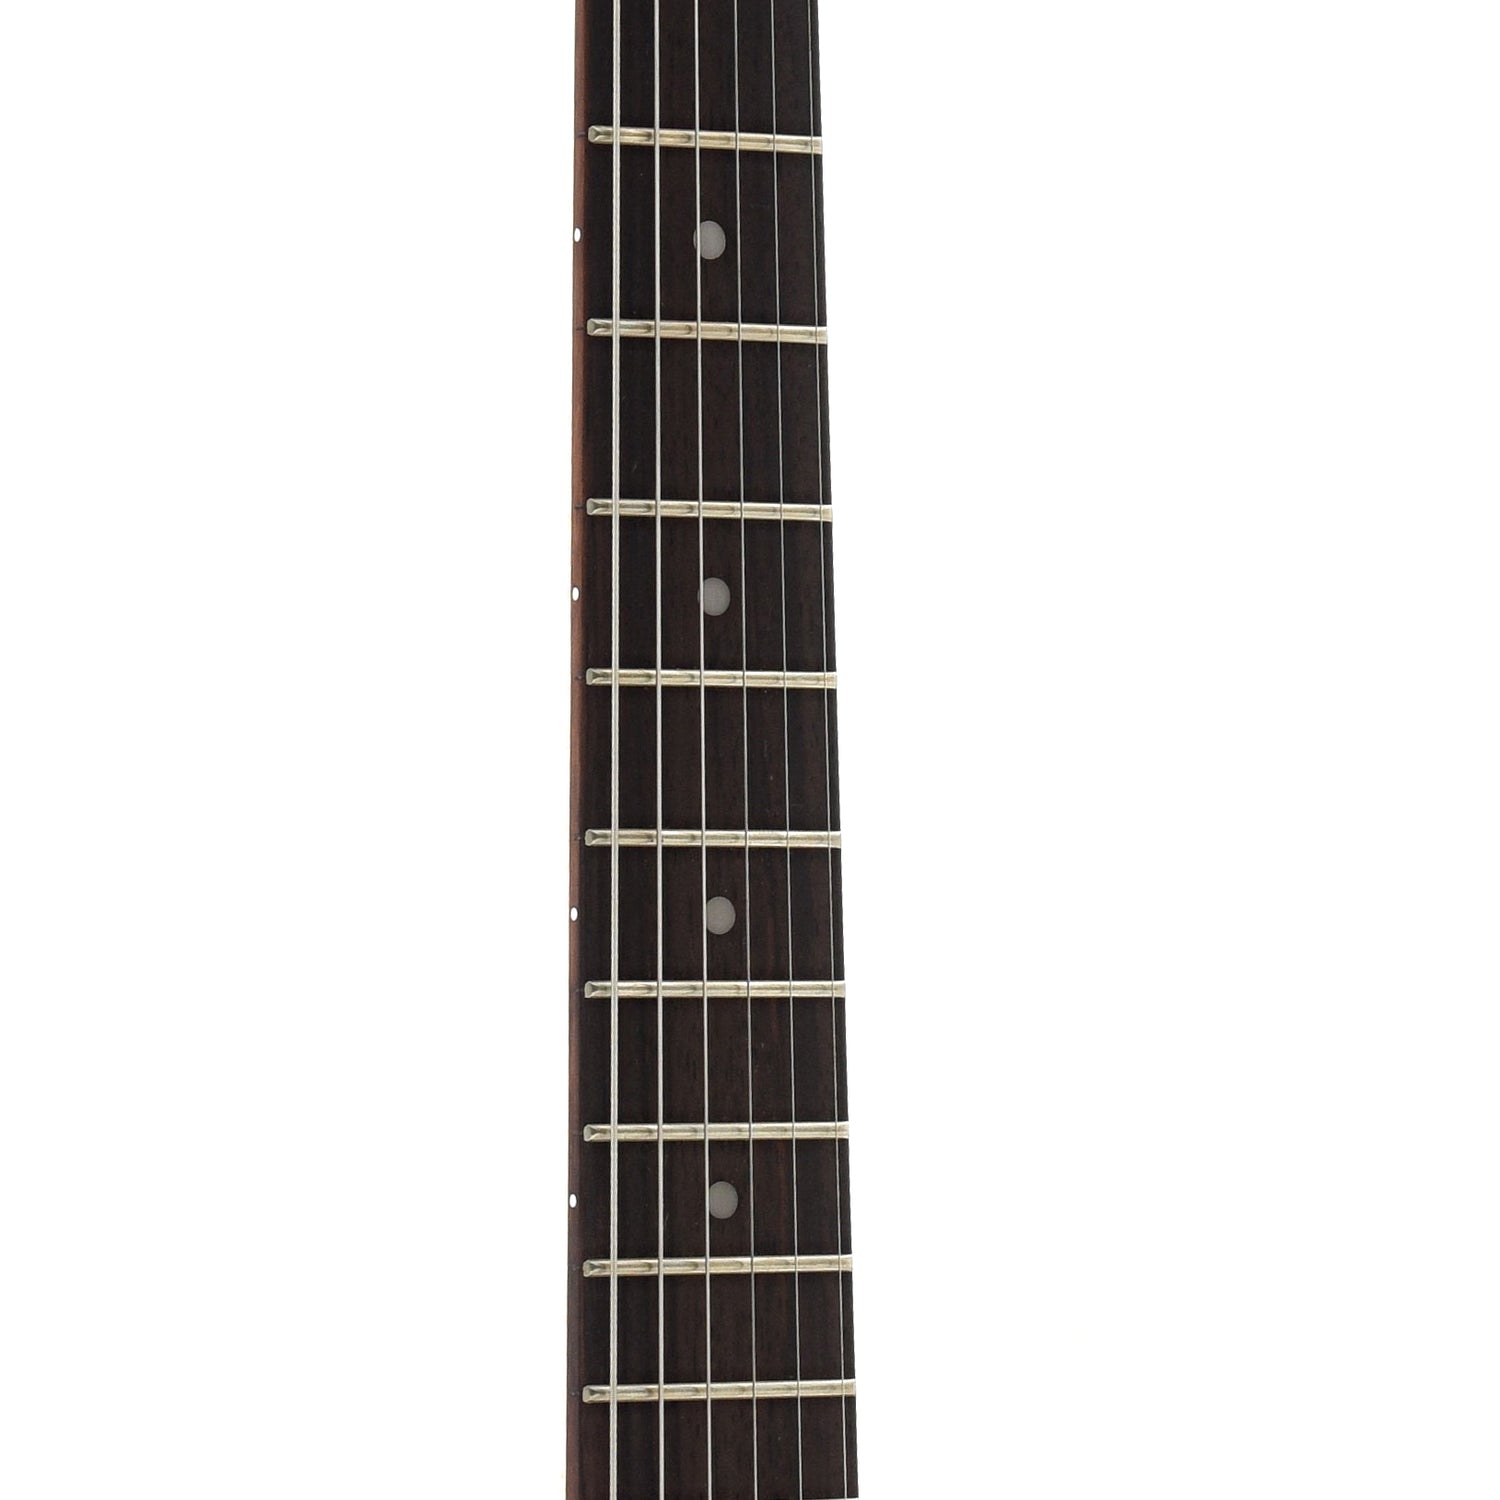 Fretboard of Squier Mini Stratocaster